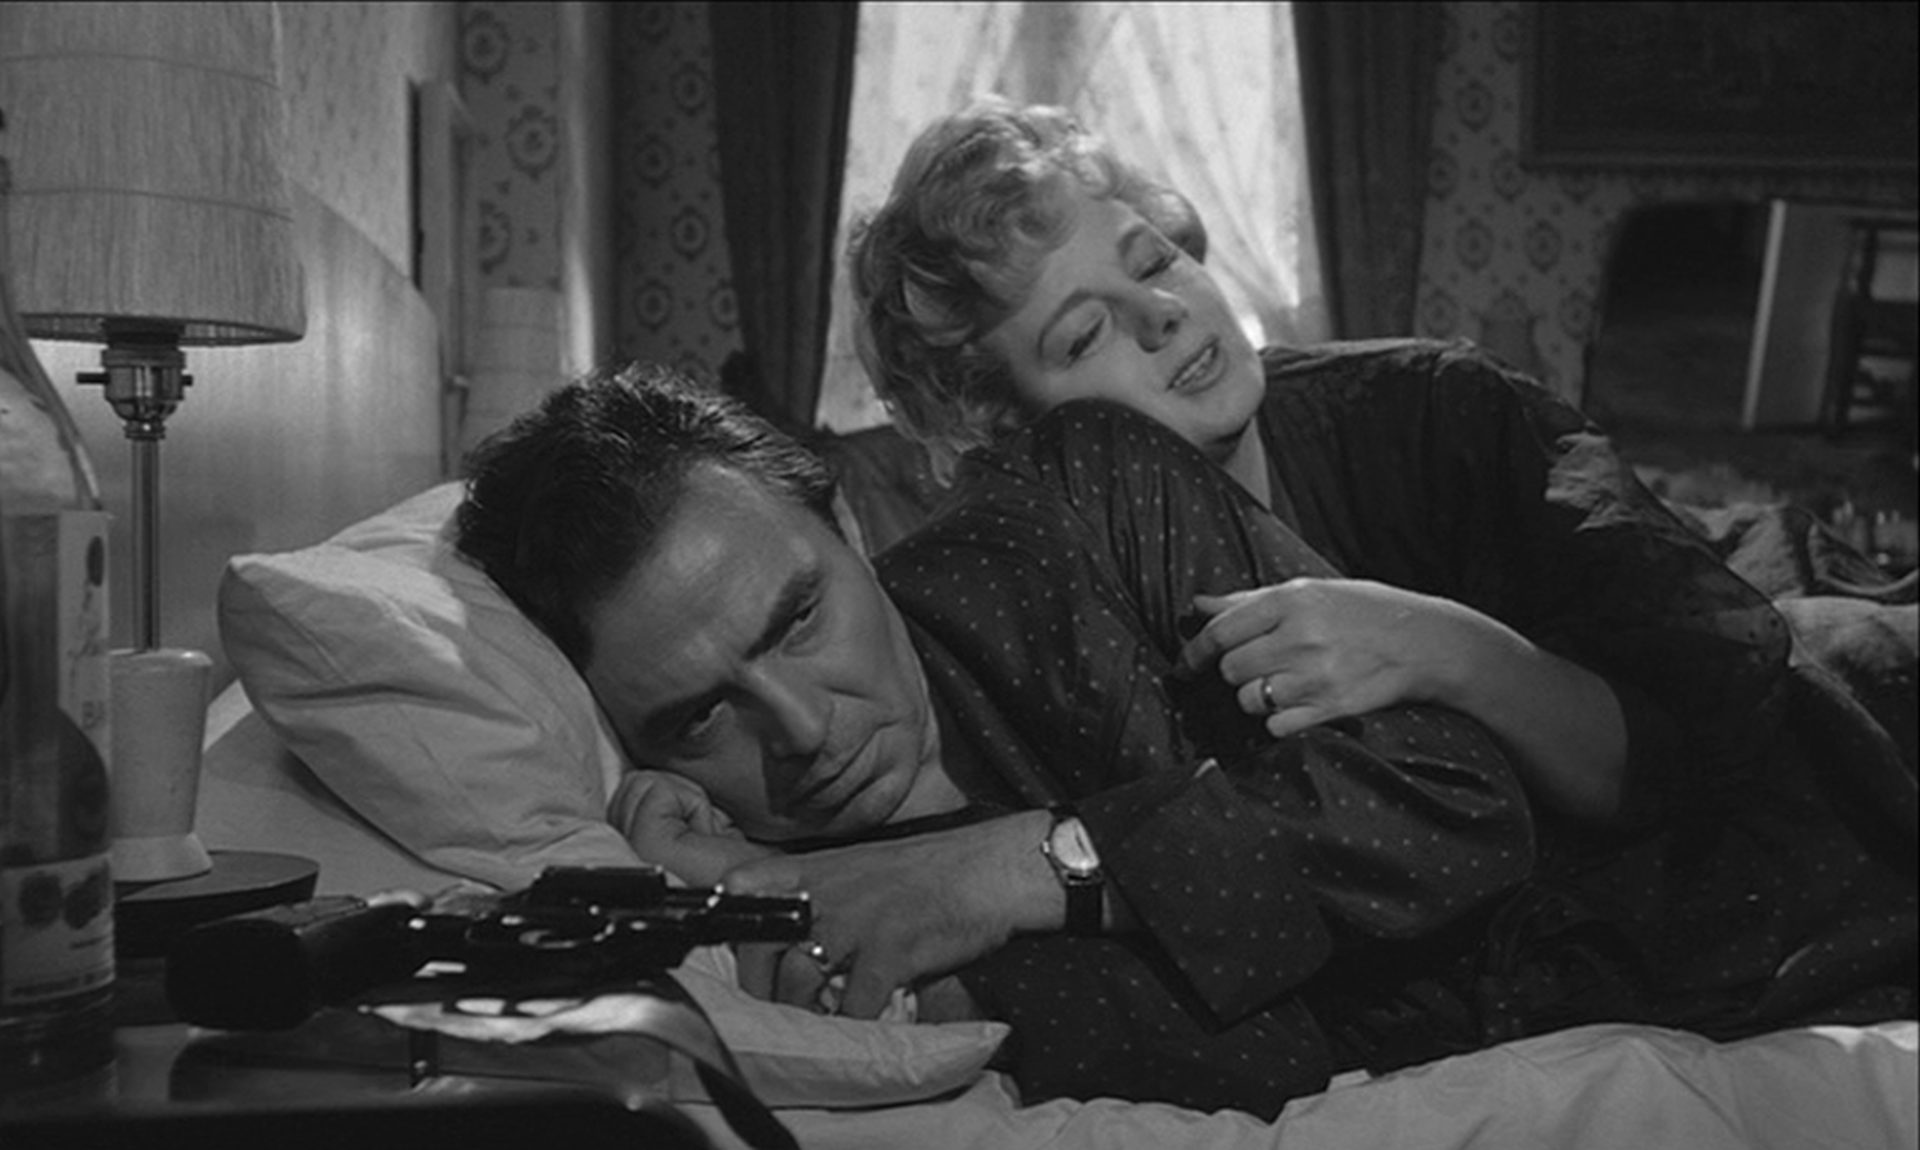 James Mason als Humbert Humbert und Shelley Winters als Charlotte Haze; beide liegen im Bett. Während ihr Gesichtsausdruck romantisches Wohlbefinden verheißt, blickt er genervt drein. Auf dem Nachttisch liegt ein Revolver.